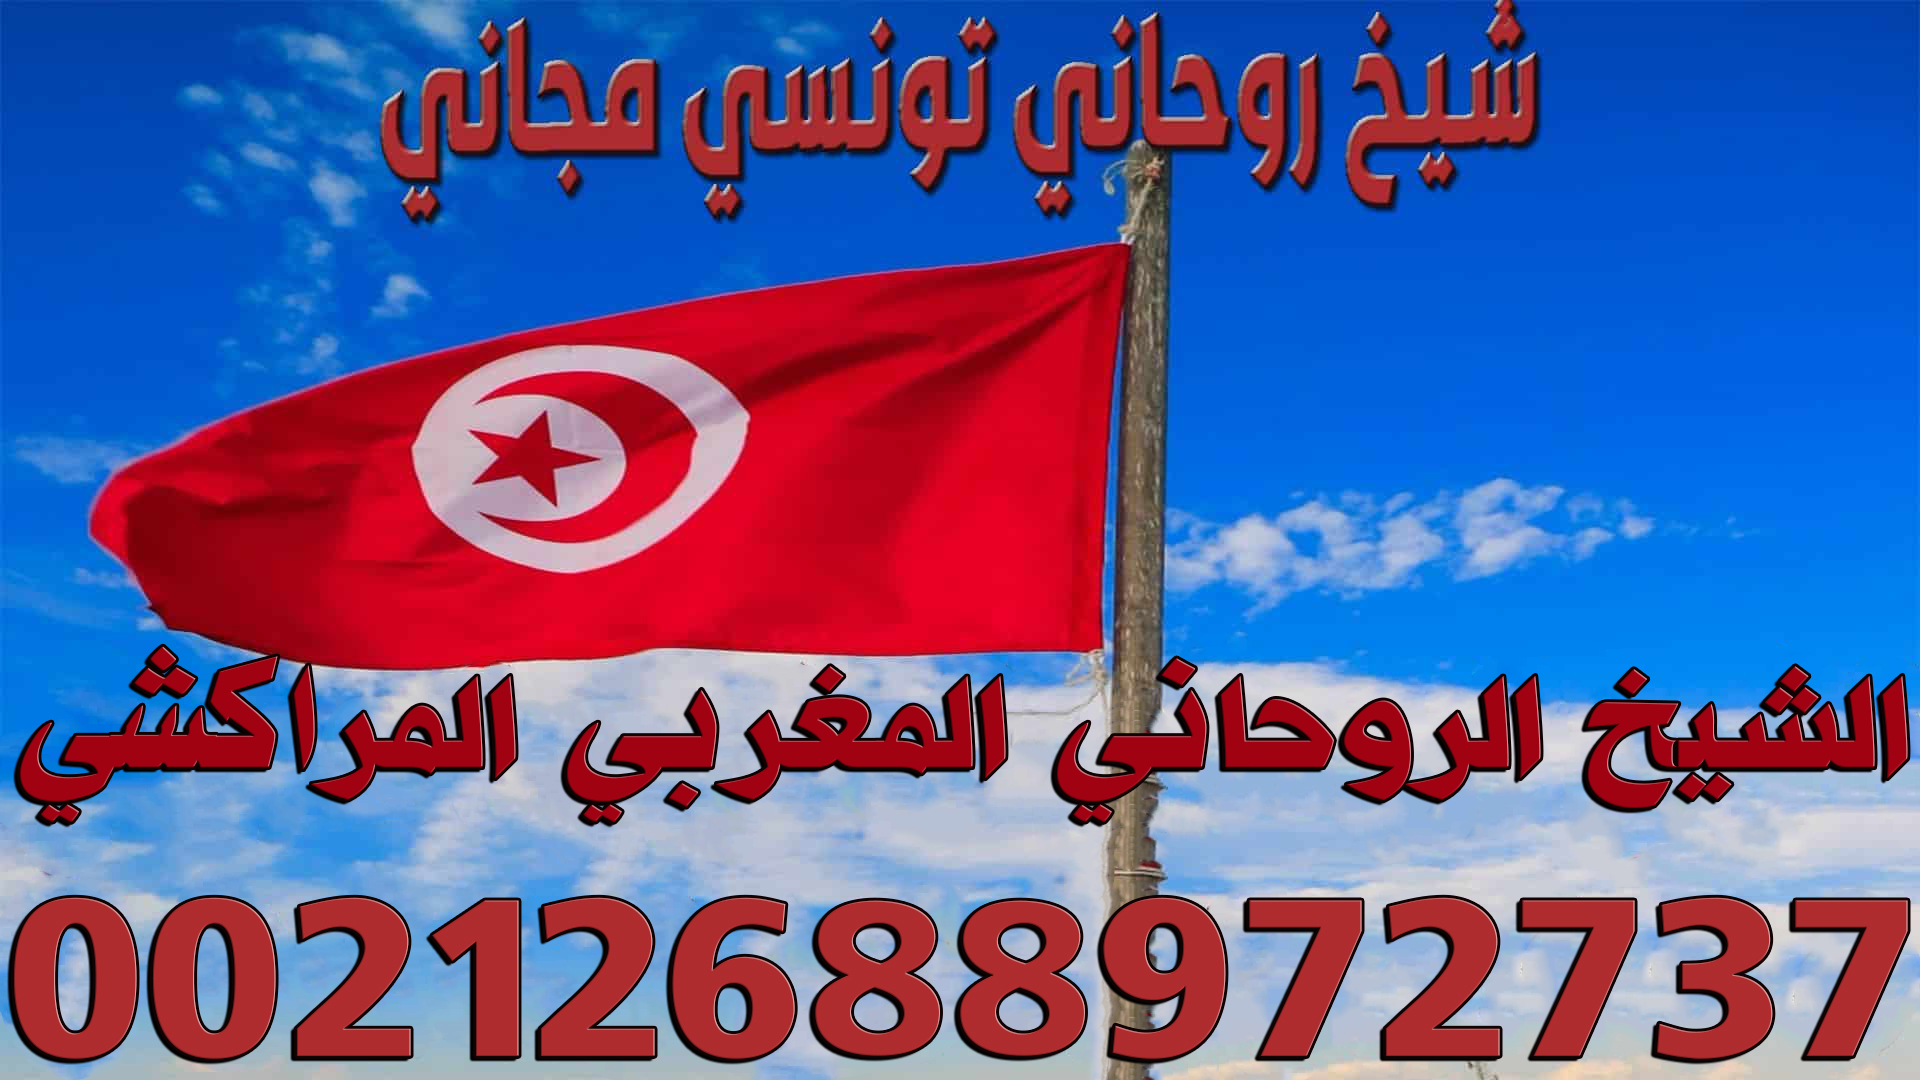 شيخ-روحاني-تونسي-مجاني.jpg